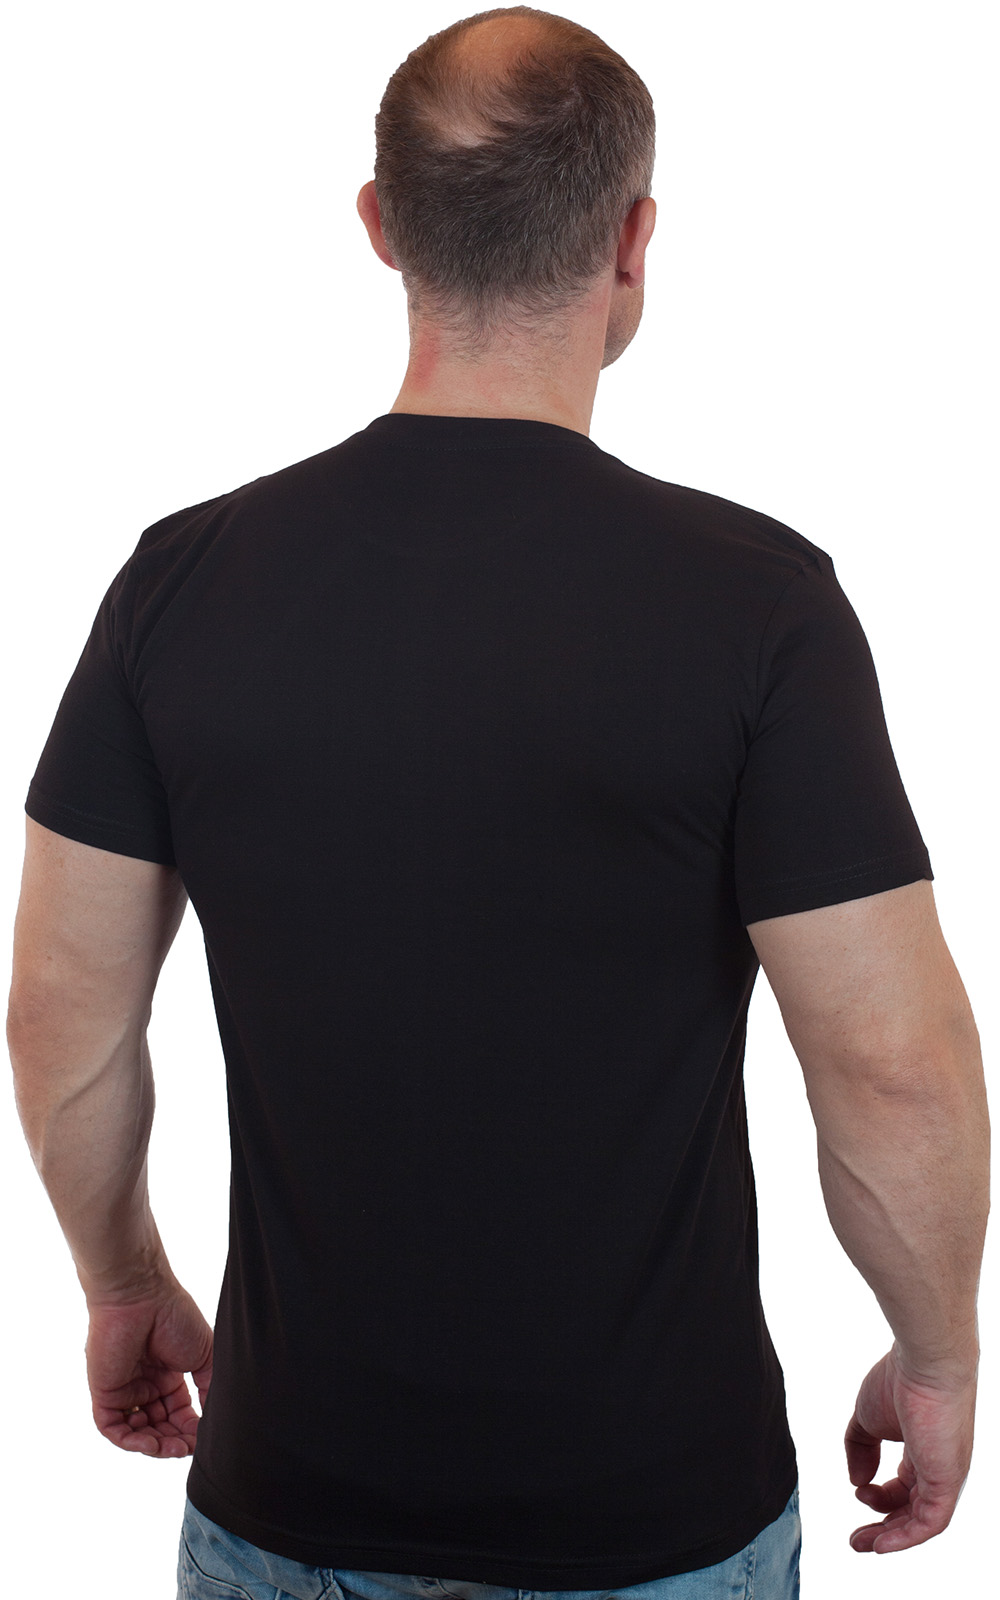 Купить надежную черную футболку ВДВ с доставкой в ваш город